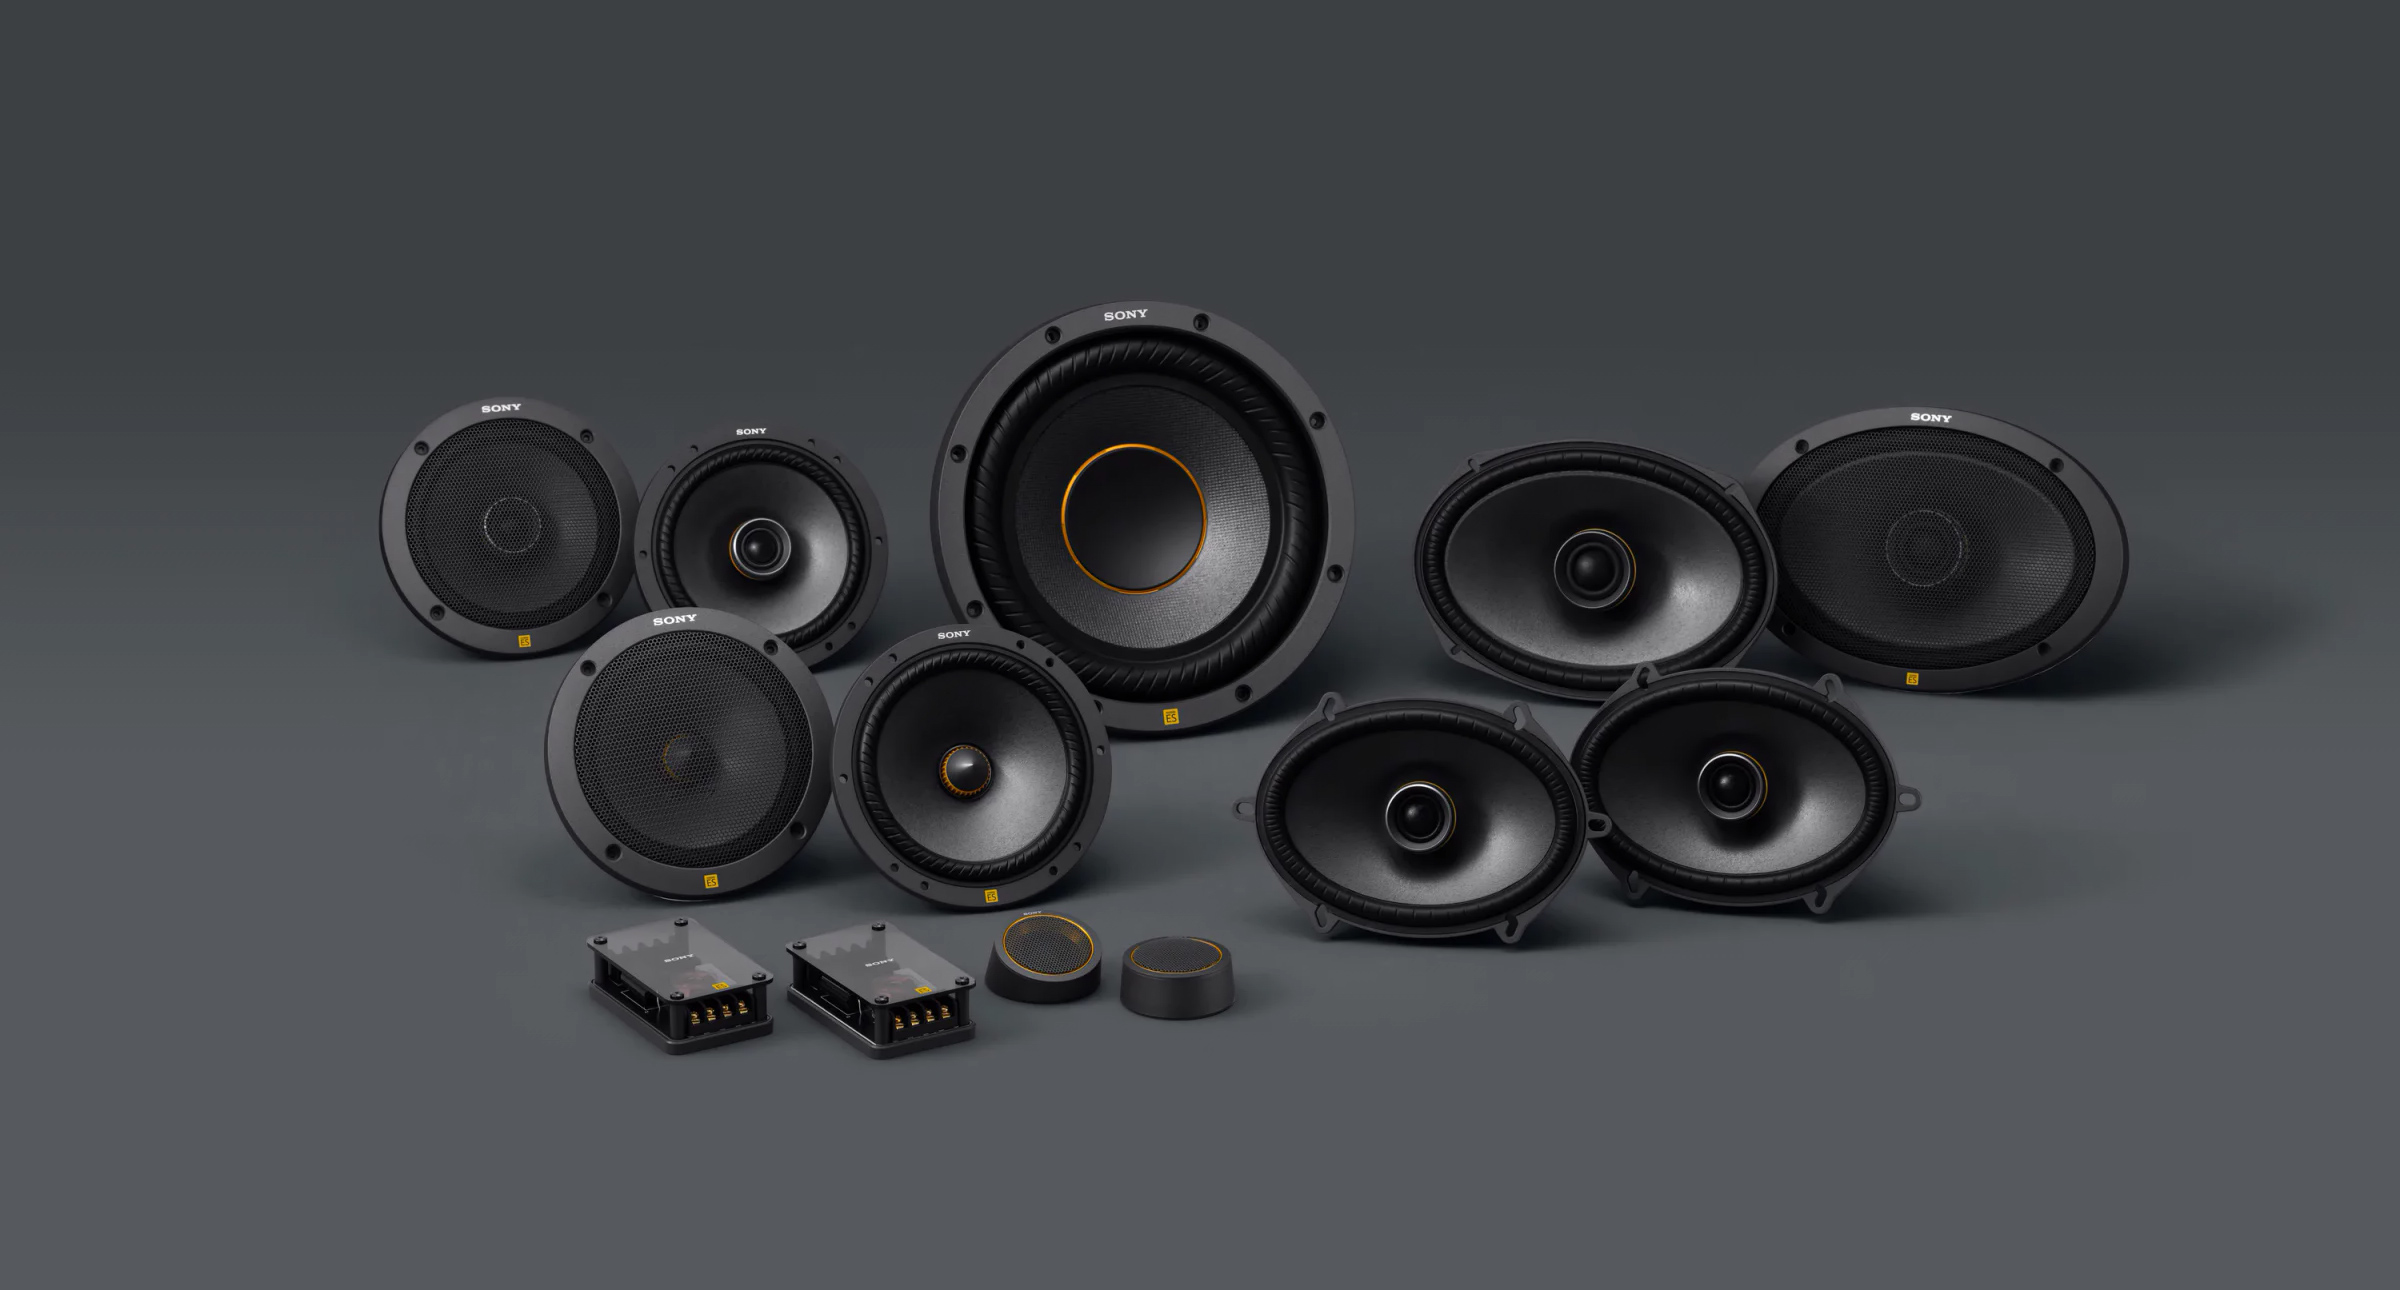 Sony prezentuje nowe głośniki samochodowe Mobile ES - świetna jakość dźwięku i najnowsze technologie